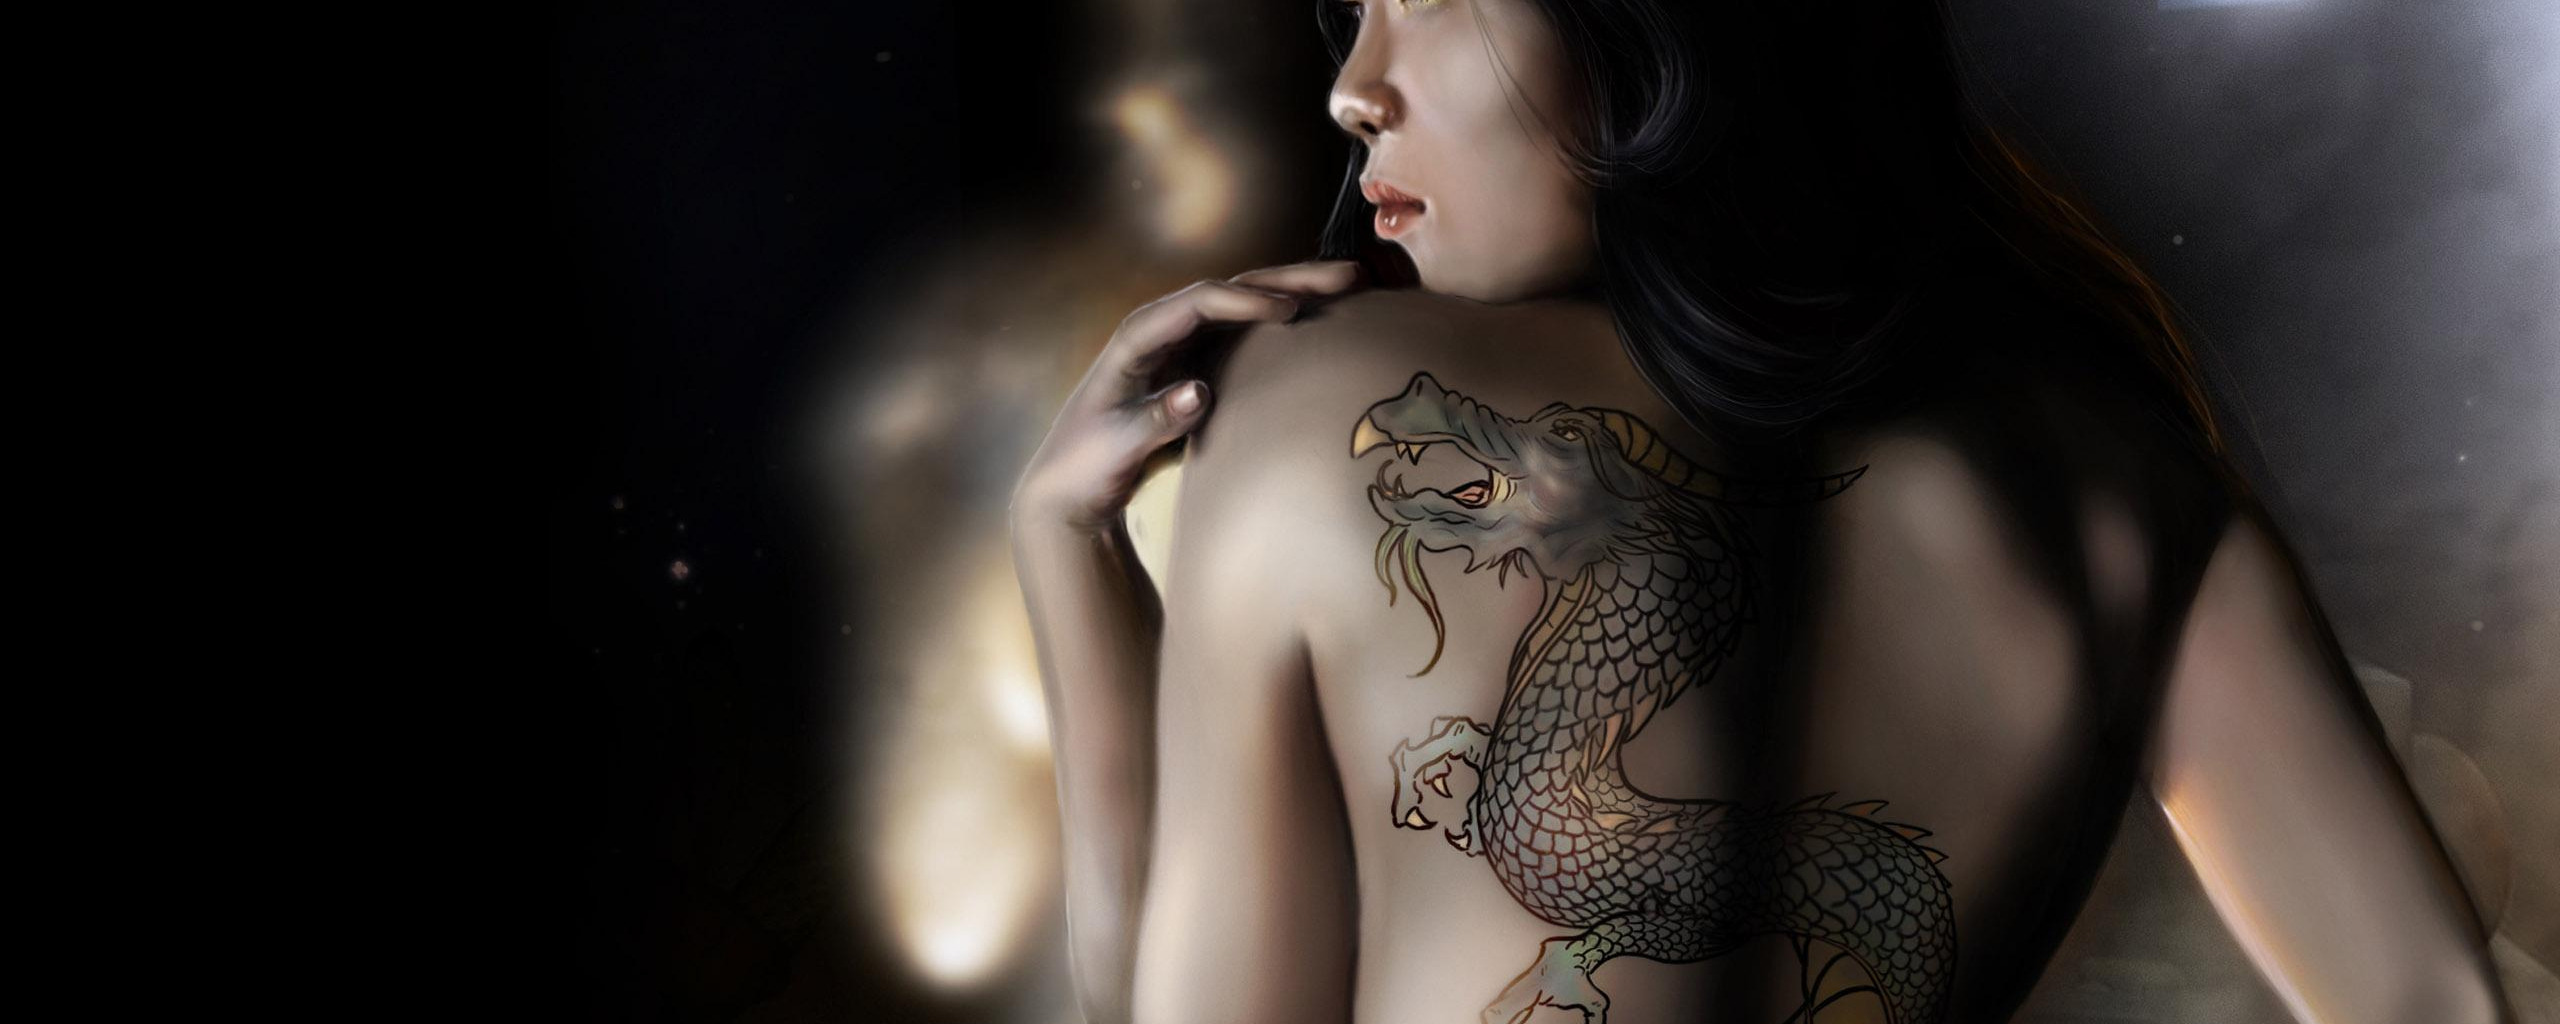 девушка с татуировкой дракона в жопу фото 56